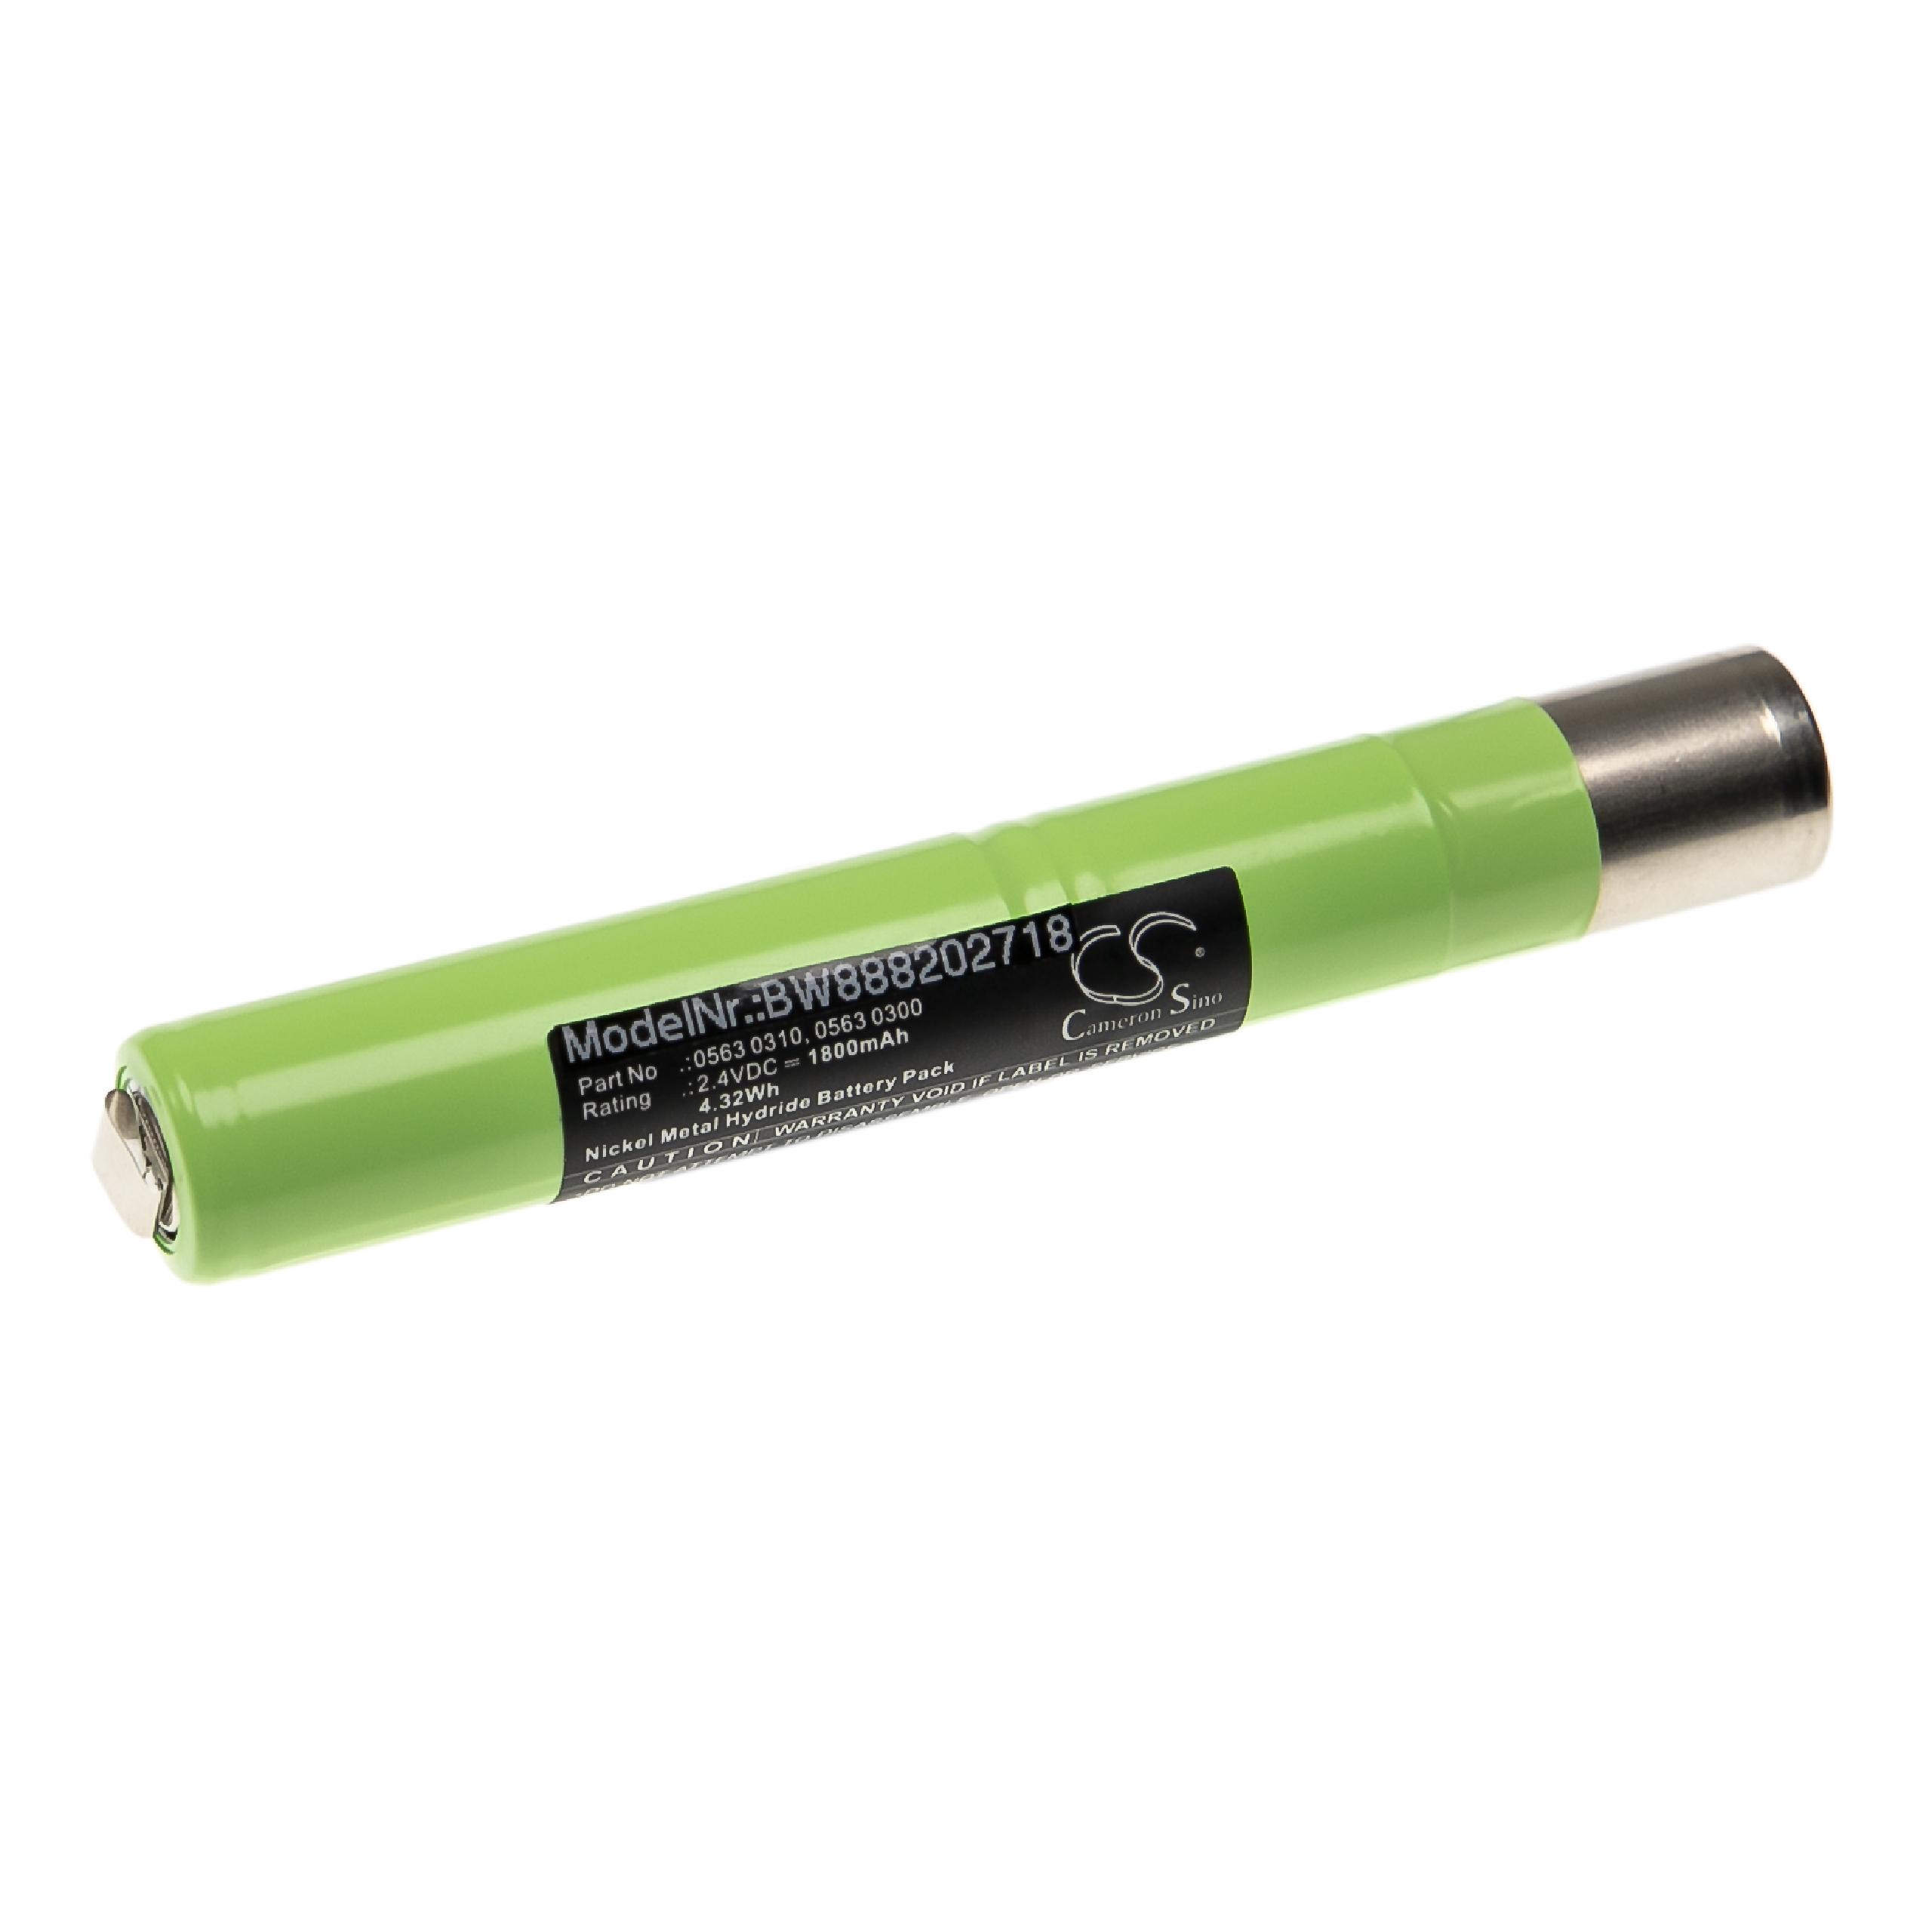 Batteria per dispositivo di misurazione sostituisce Testo 0563 0310, 0563 0300 Testo - 1800mAh 2,4V NiMH